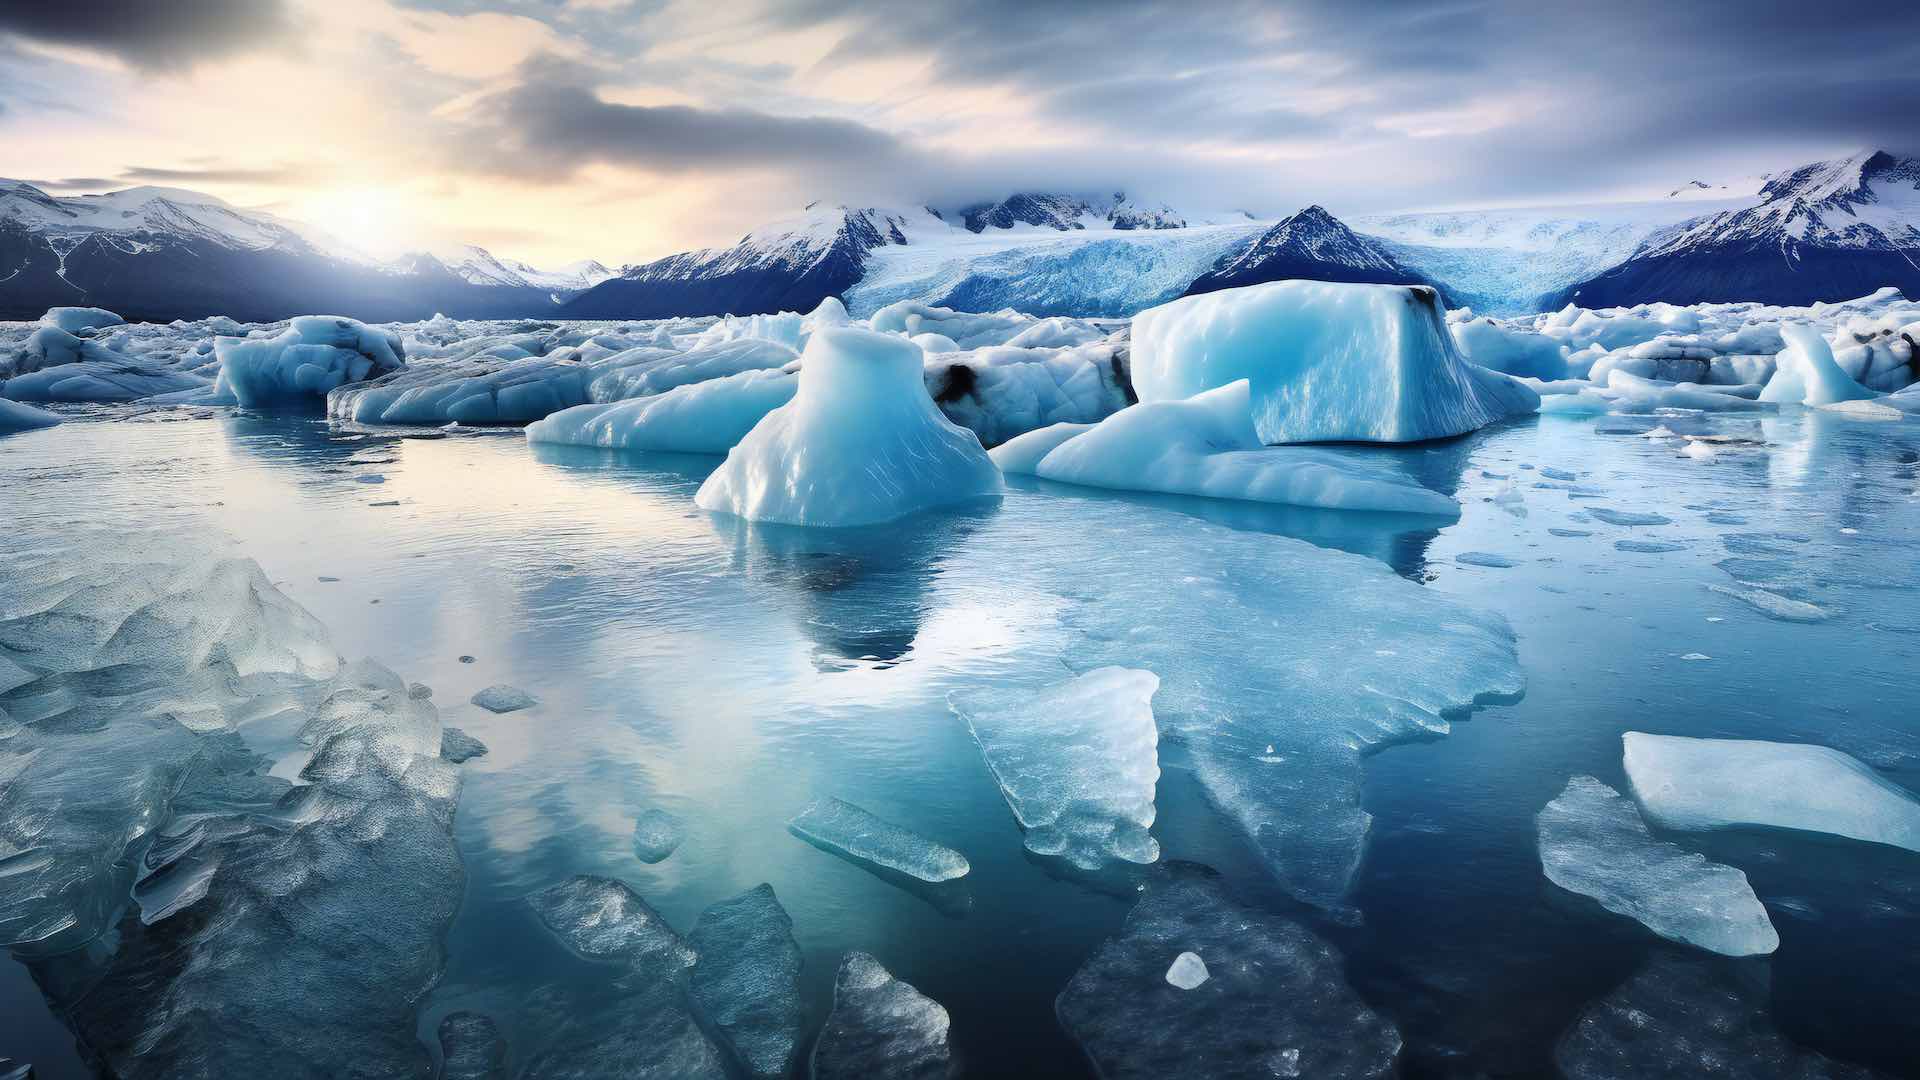 अध्ययन के अनुसार, ग्रीनलैंड की बर्फ की चादर 20% तेजी से पिघल रही है